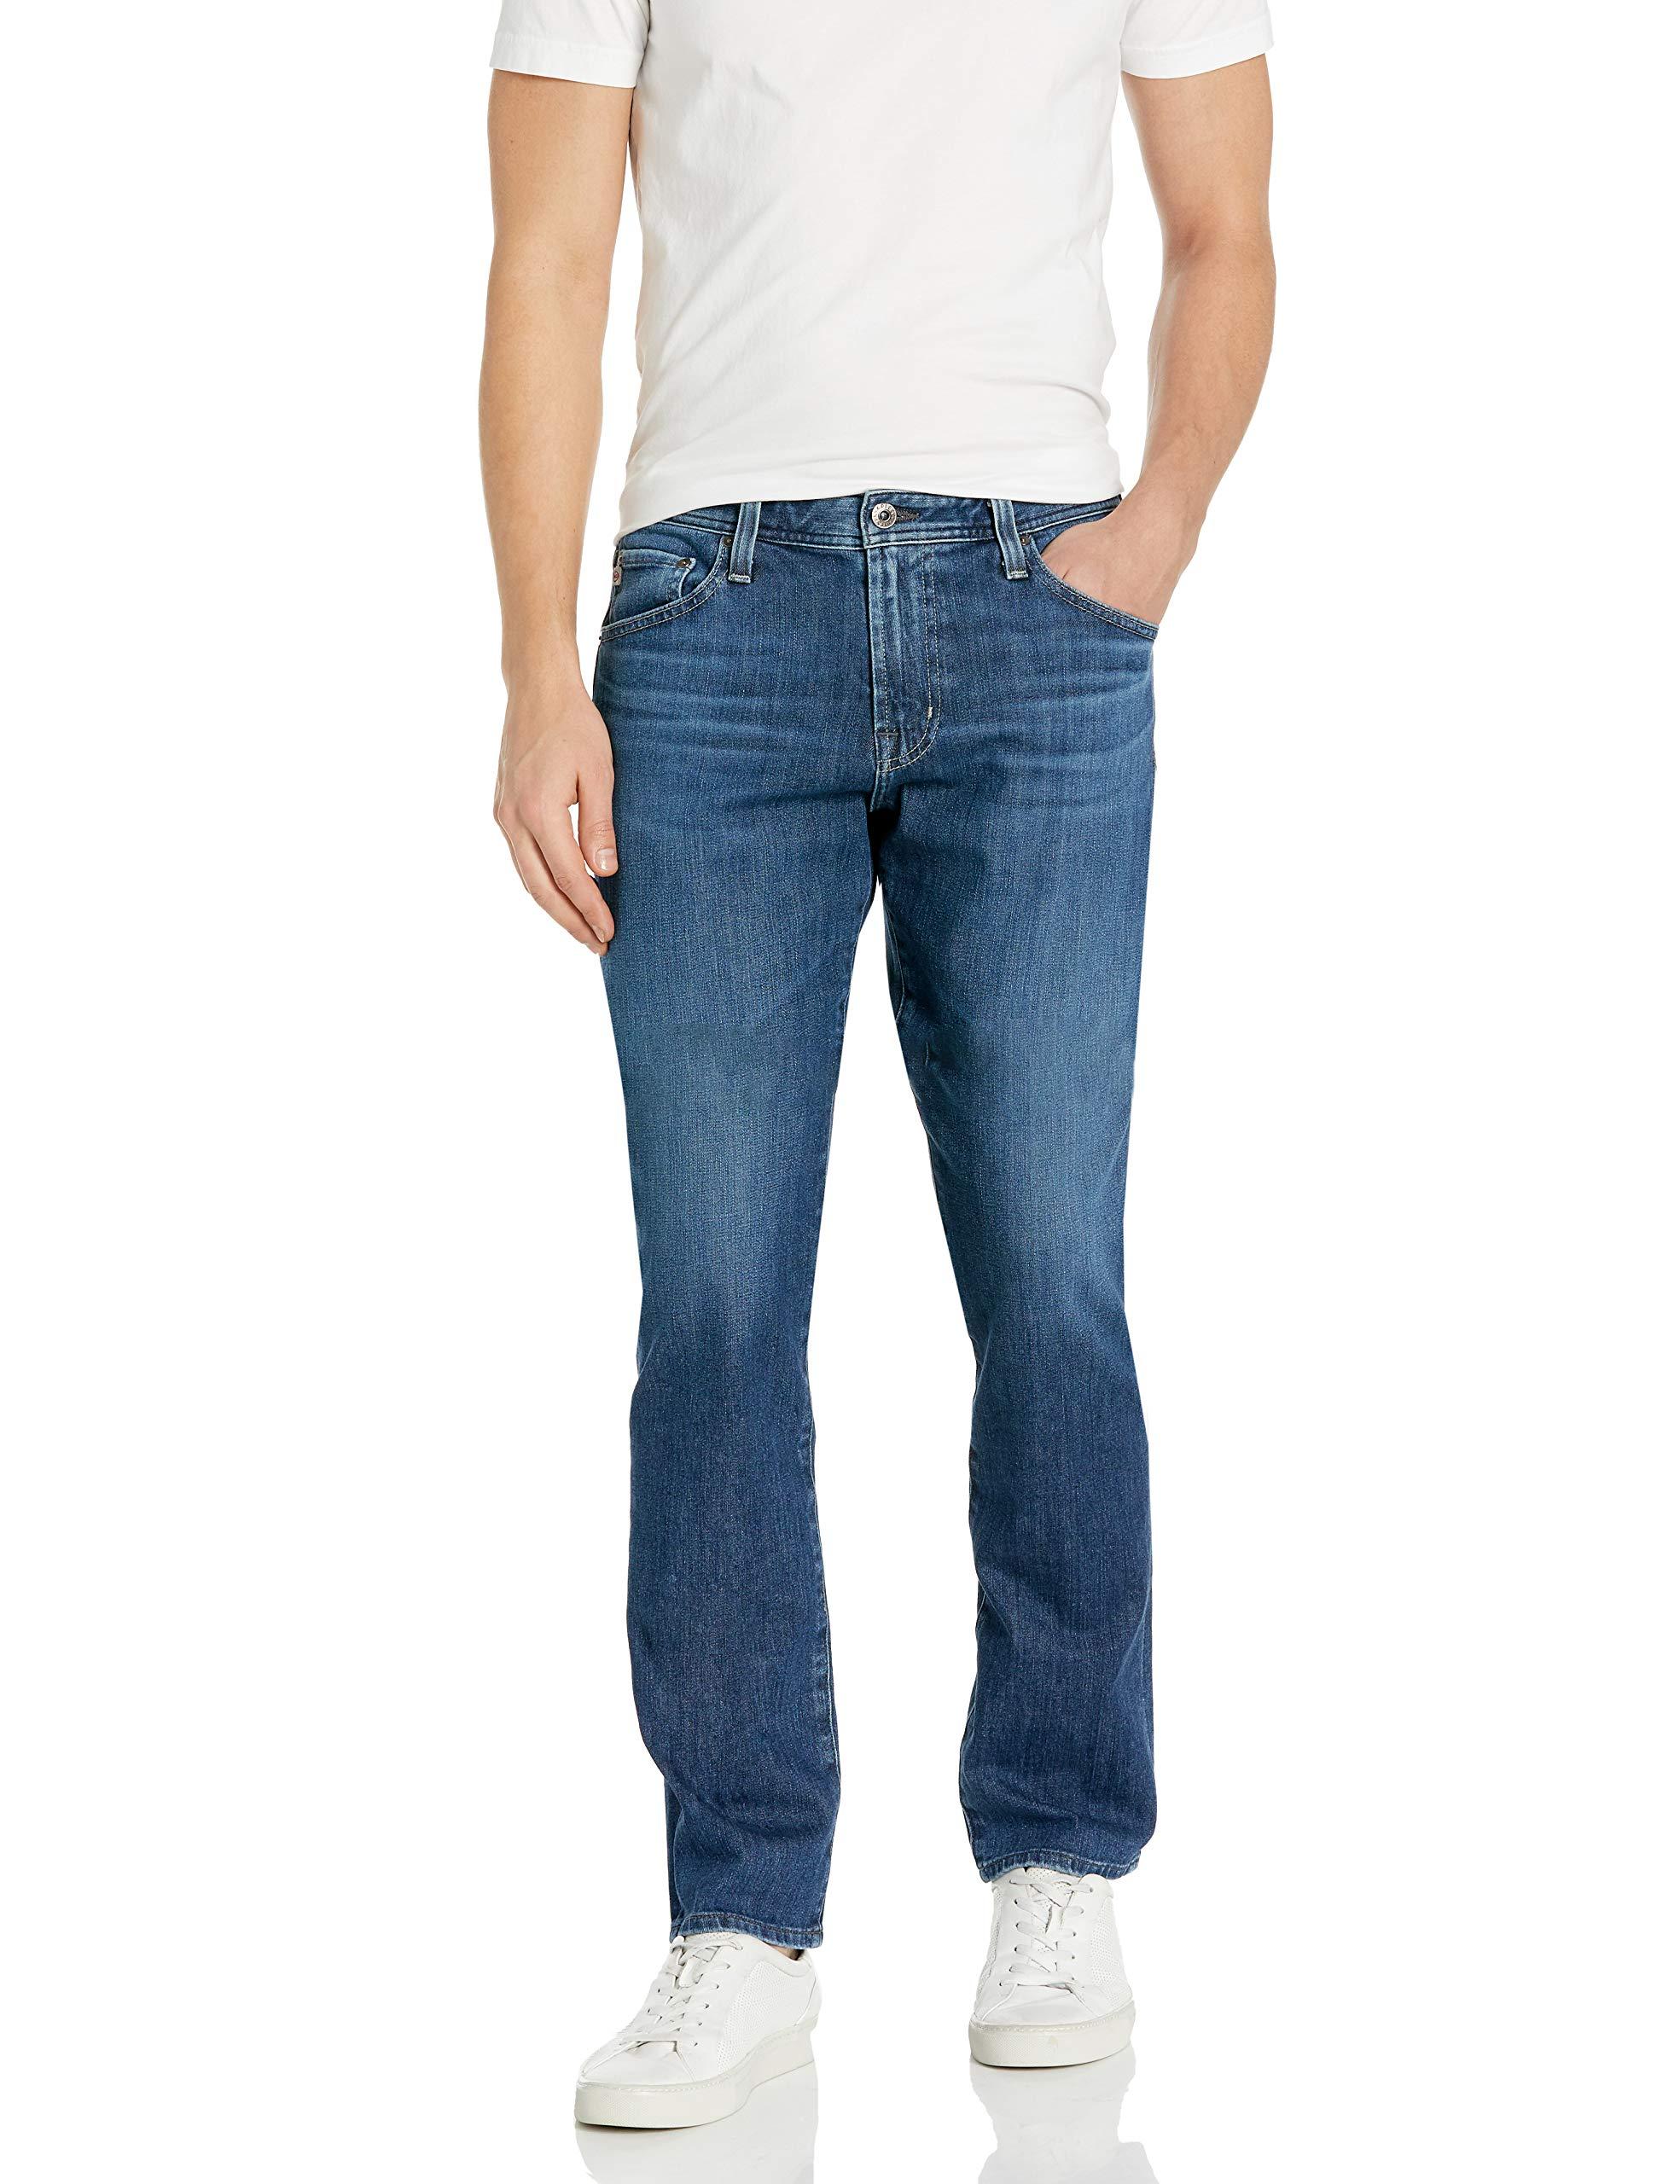 AG Jeans The Everett Slim Straight Leg Denim Jean in Blue for Men - Lyst